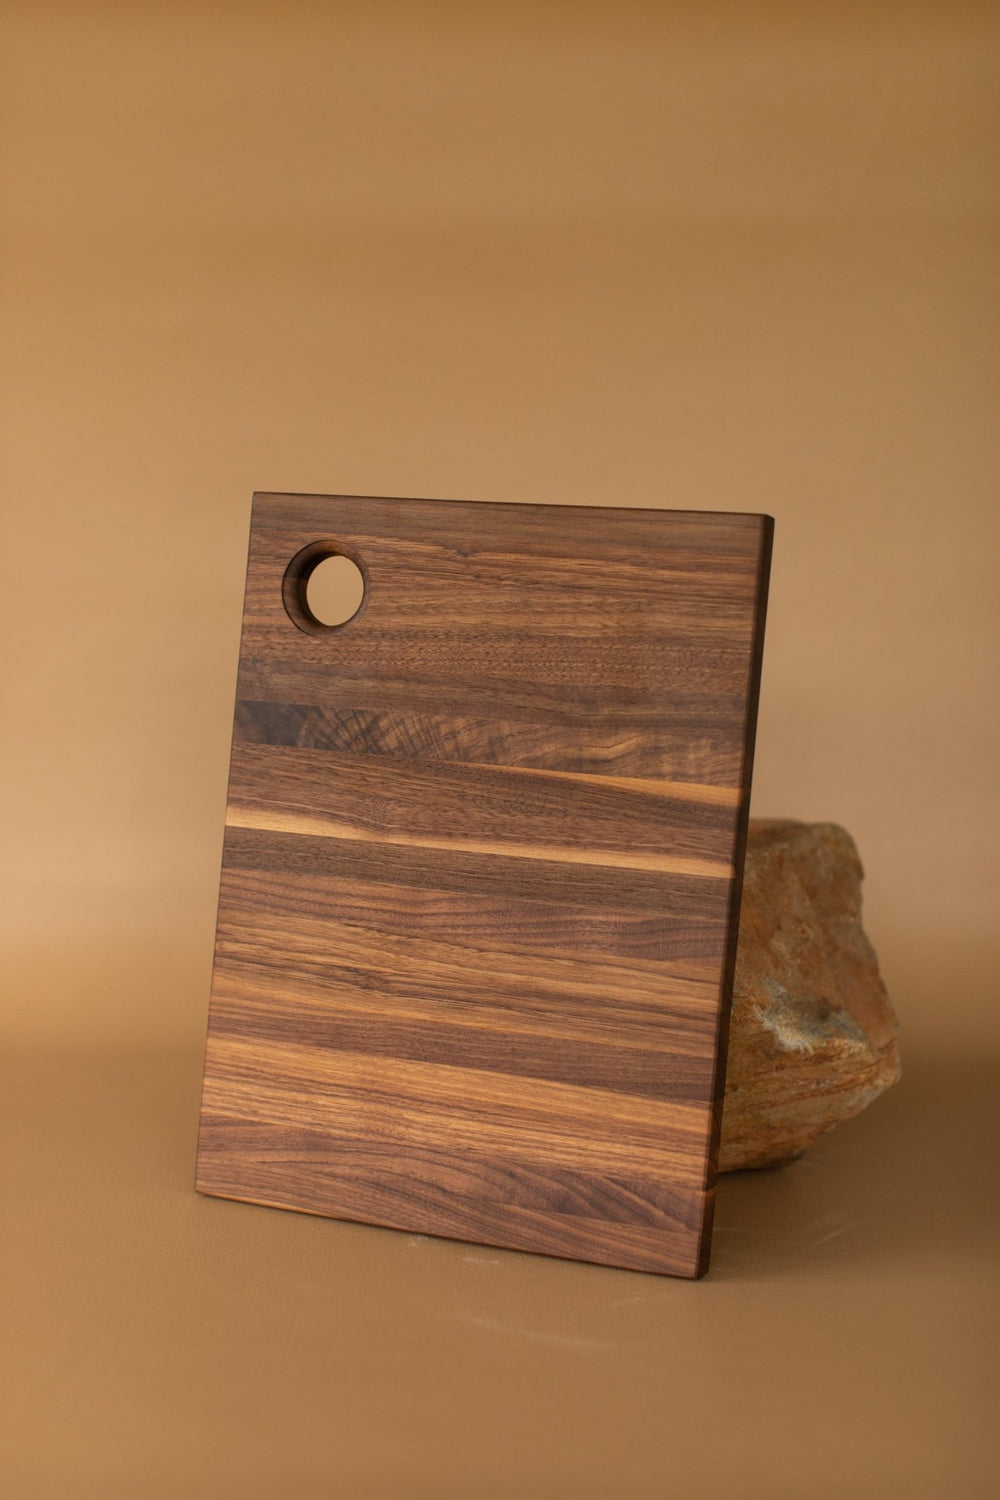 https://acornblufffarms.com/cdn/shop/products/handcrafted-walnut-cutting-board-by-frankie-mcwhirt-10-x-1625-514427_1000x.jpg?v=1667780092